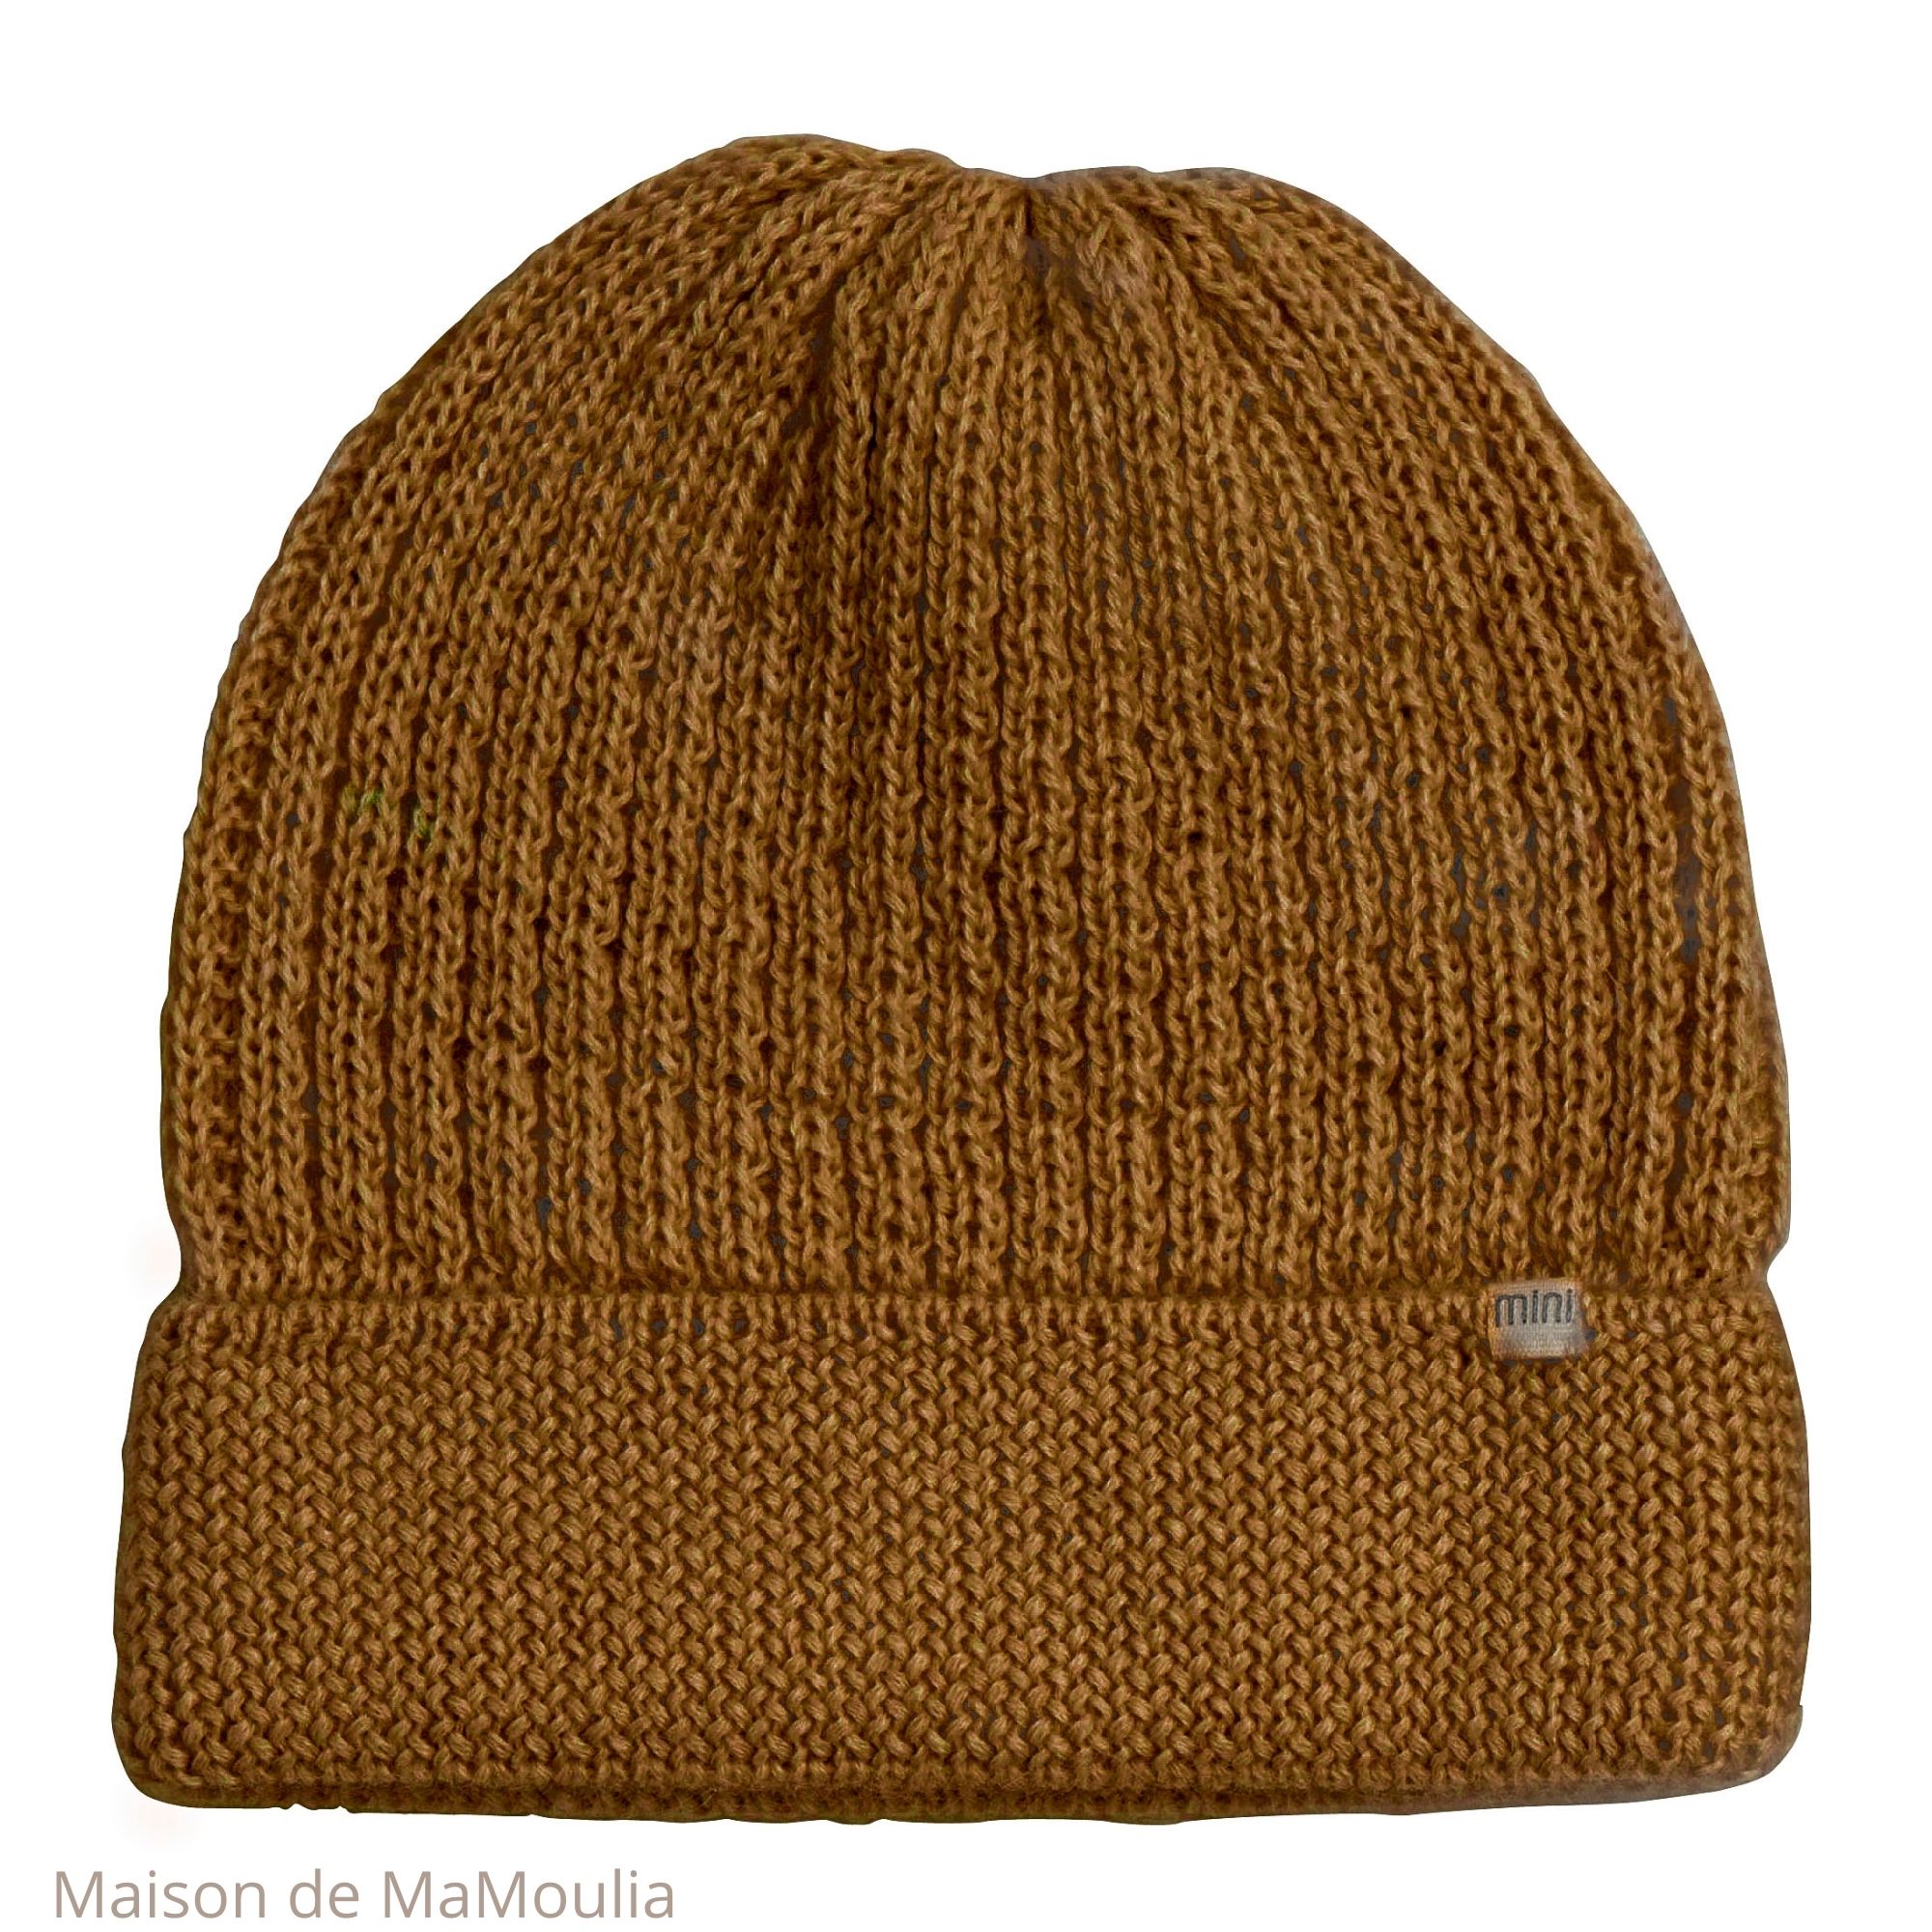 bonnet-chapeau-enfant-fille-pure-laine-alpaga-minimalisma-maison-de-mamoulia-sable-beige-feuille-automne